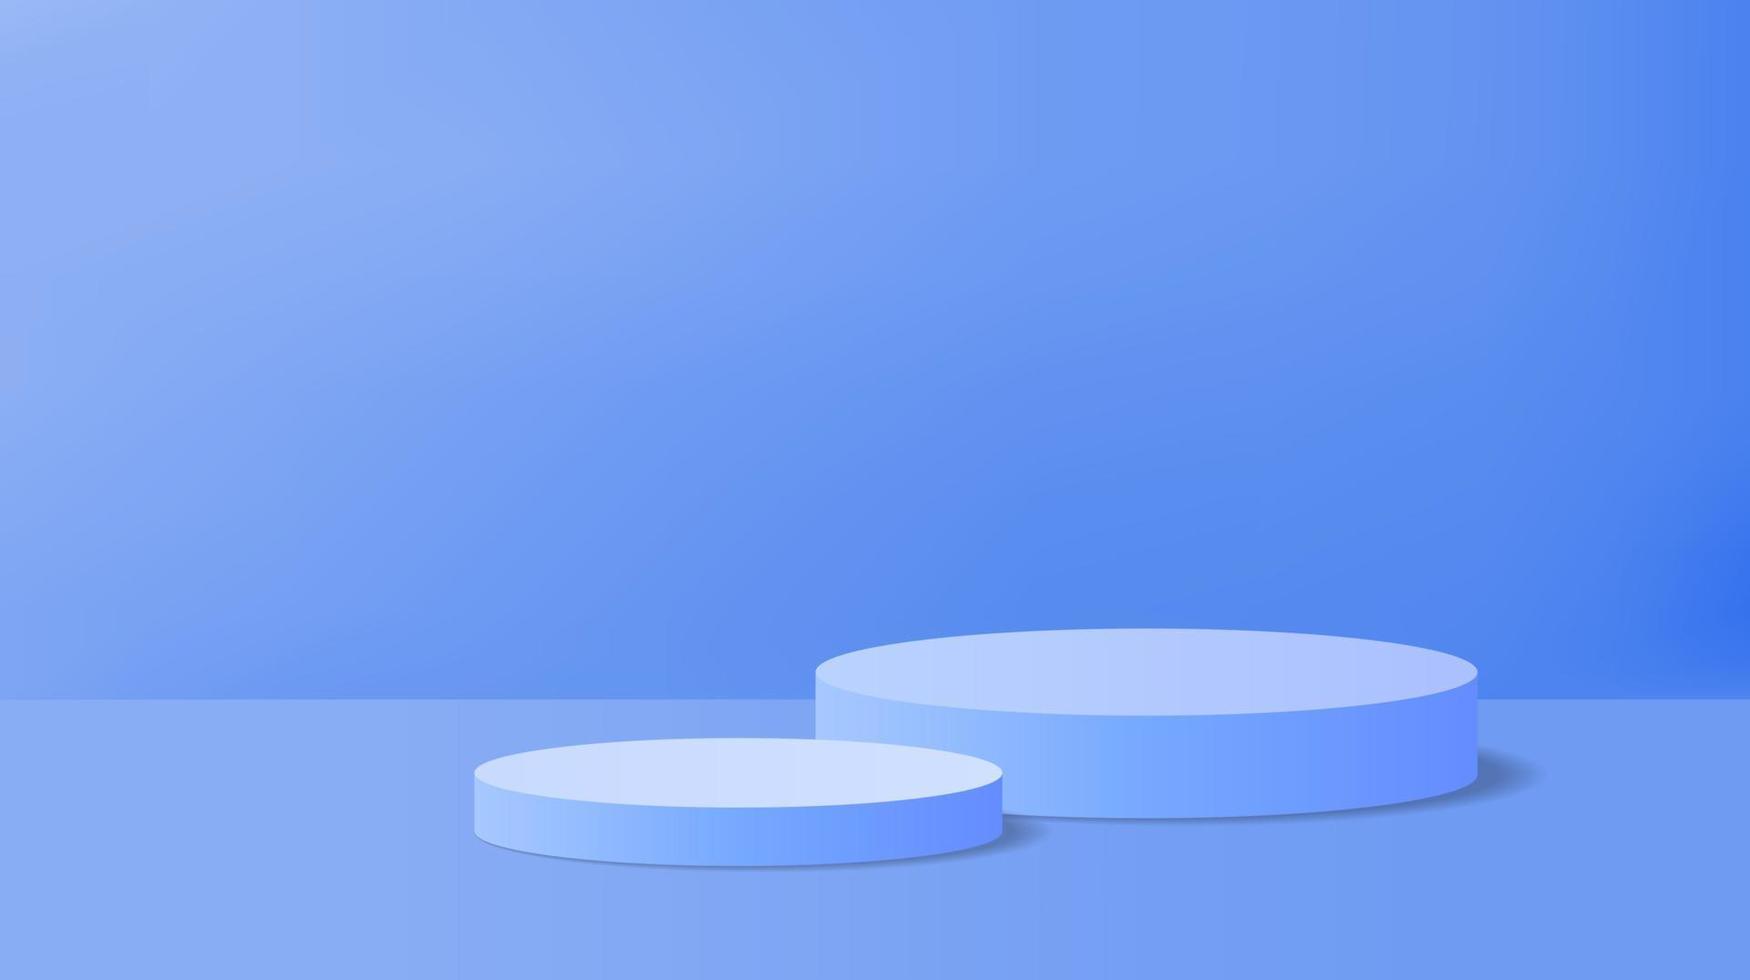 abstract blauw Product Scherm achtergrond met 3d geven cilinder voetstuk podium. blauw minimaal kamer tafereel voor Product Scherm presentatie. meetkundig stadium platform vector